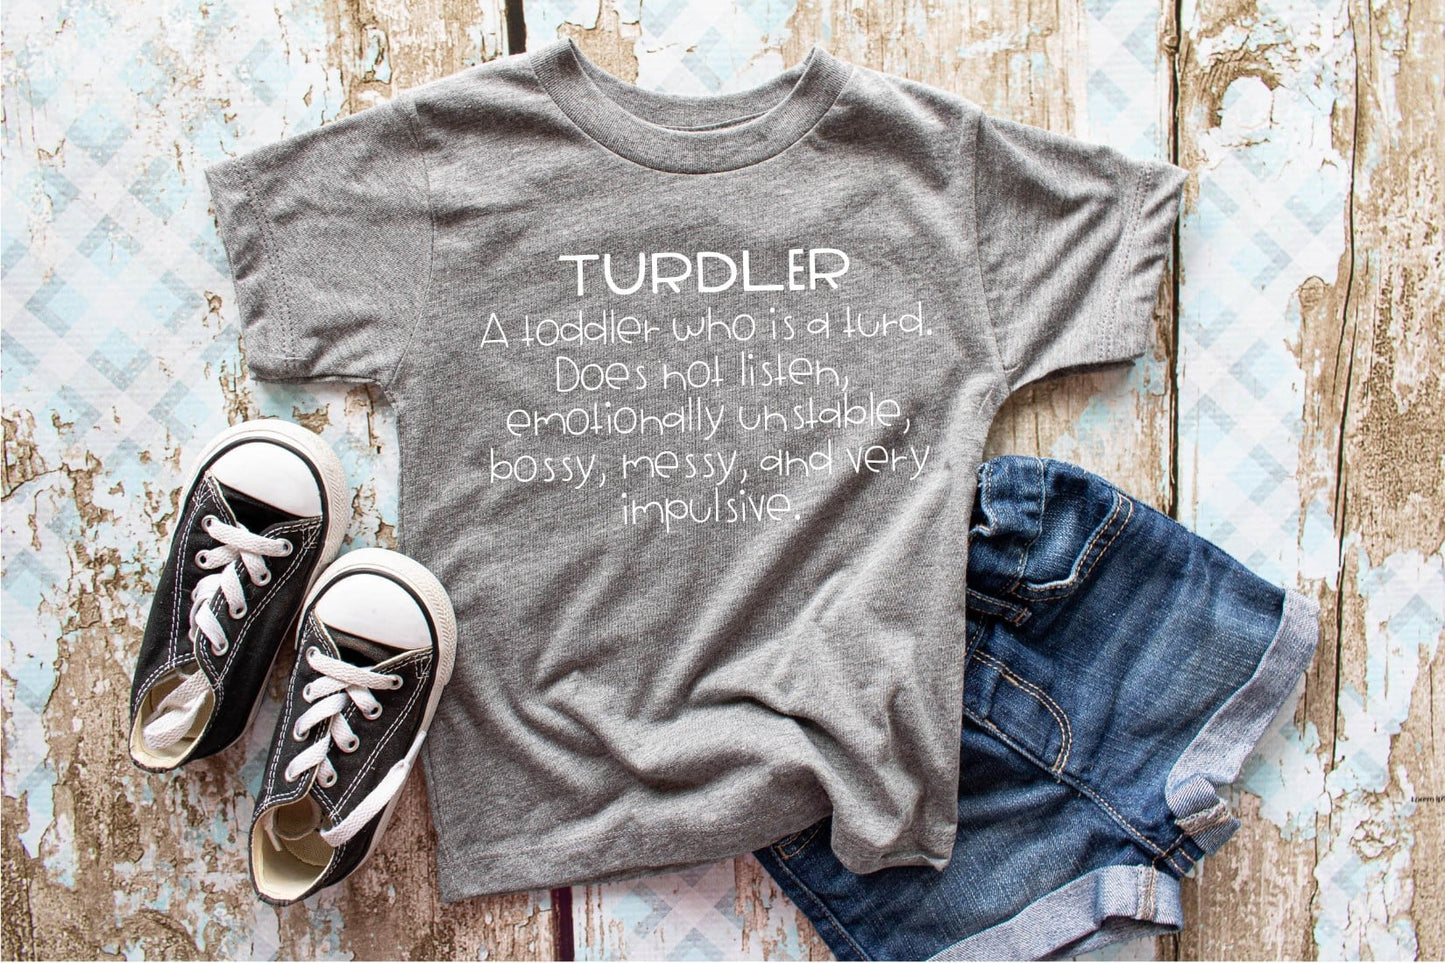 Turdler Design